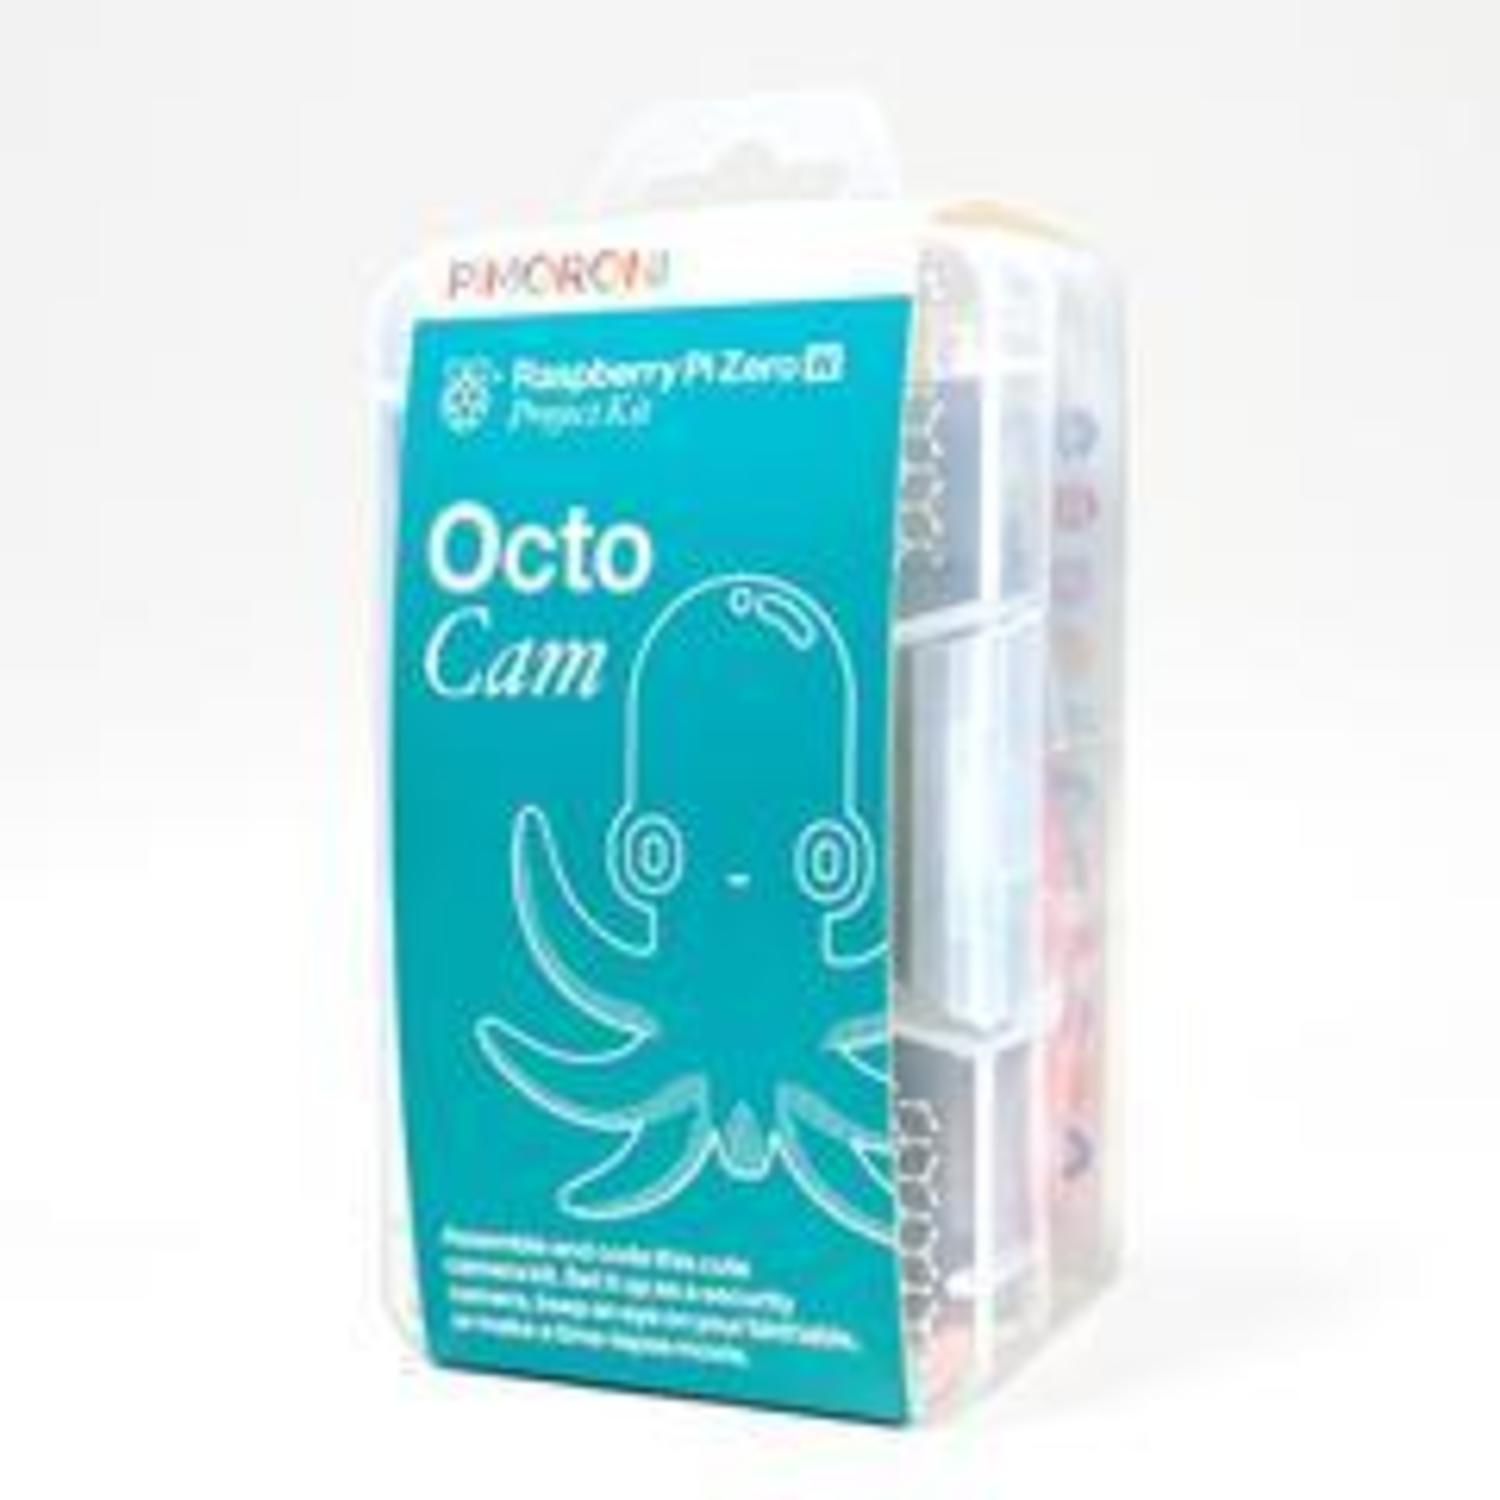 OctoCam - Pi Zero W Project Kit